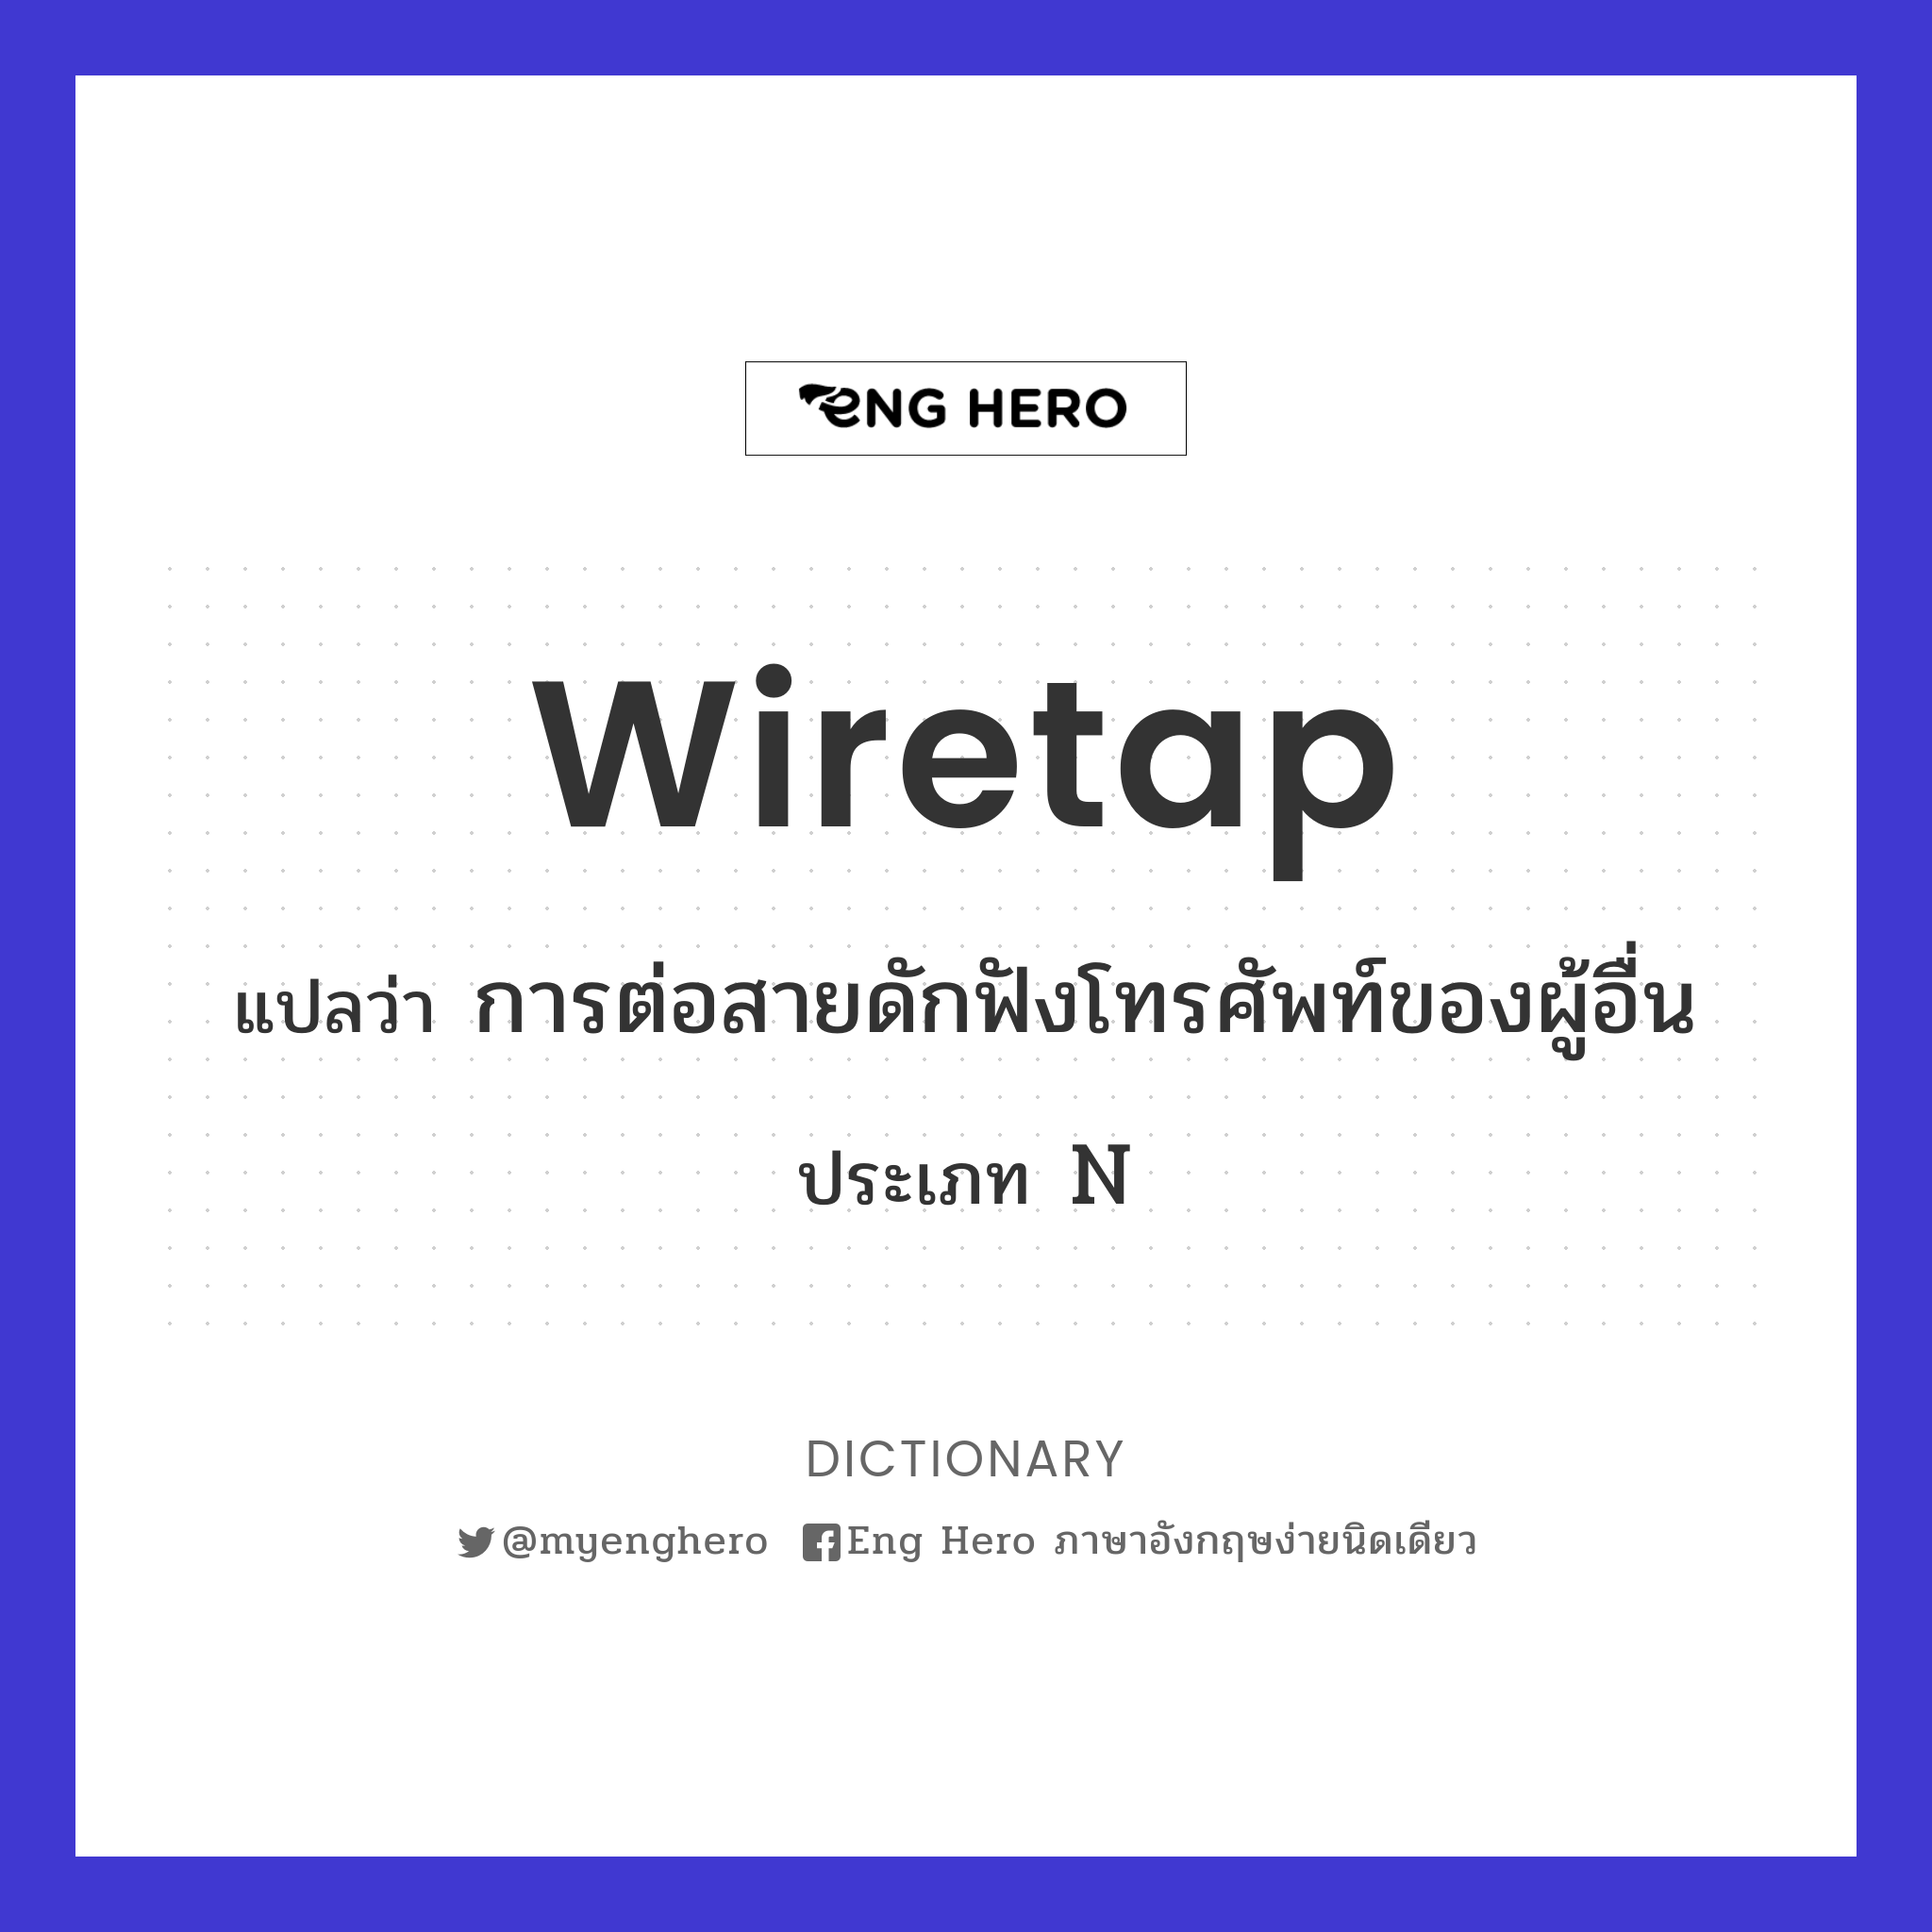 Wiretap แปลว่า ต่อสายดักฟังโทรศัพท์ของผู้อื่น | Eng Hero เรียนภาษาอังกฤษ  ออนไลน์ ฟรี